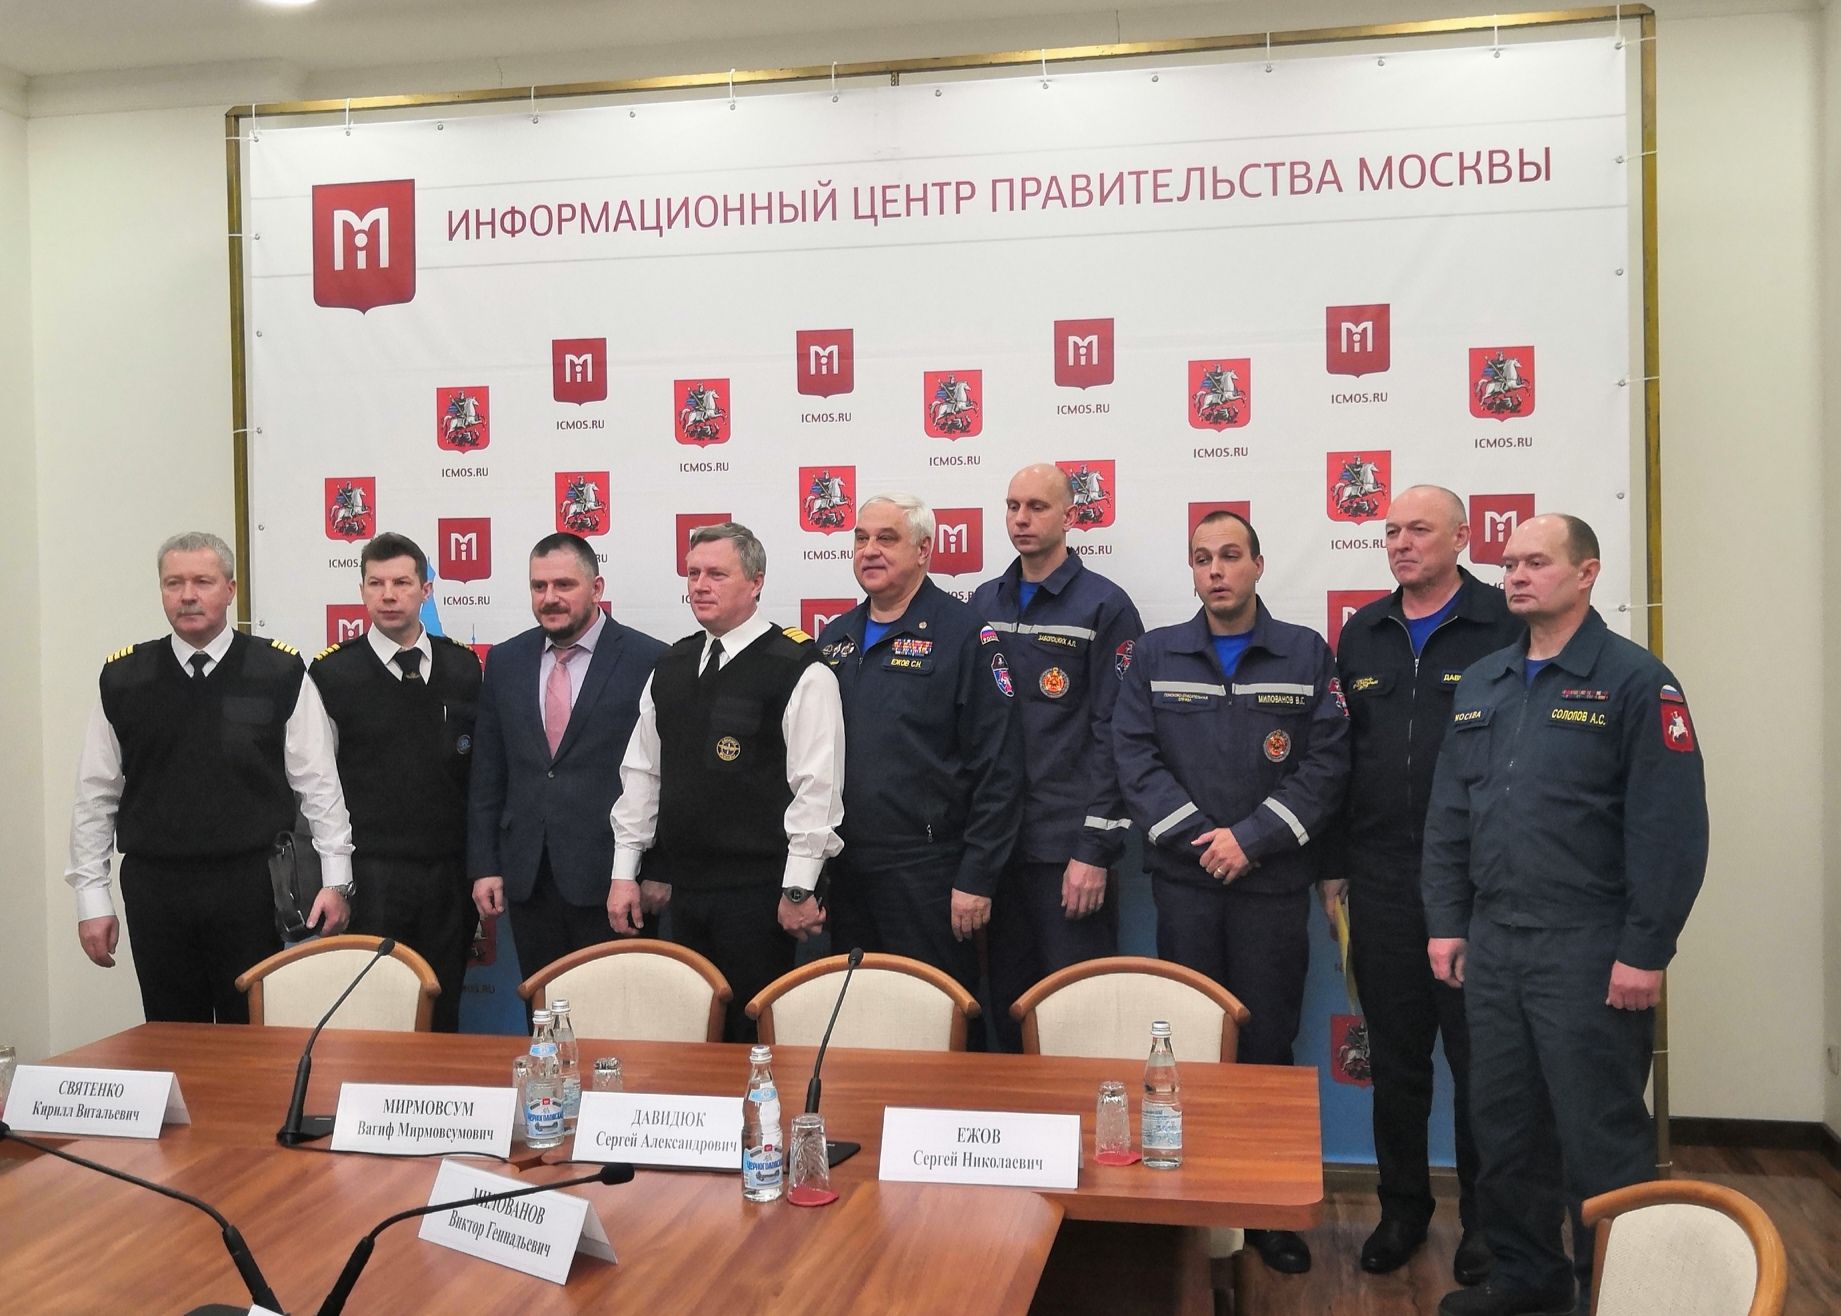 Сотрудники спасательных служб подвели итоги в Правительстве Москвы